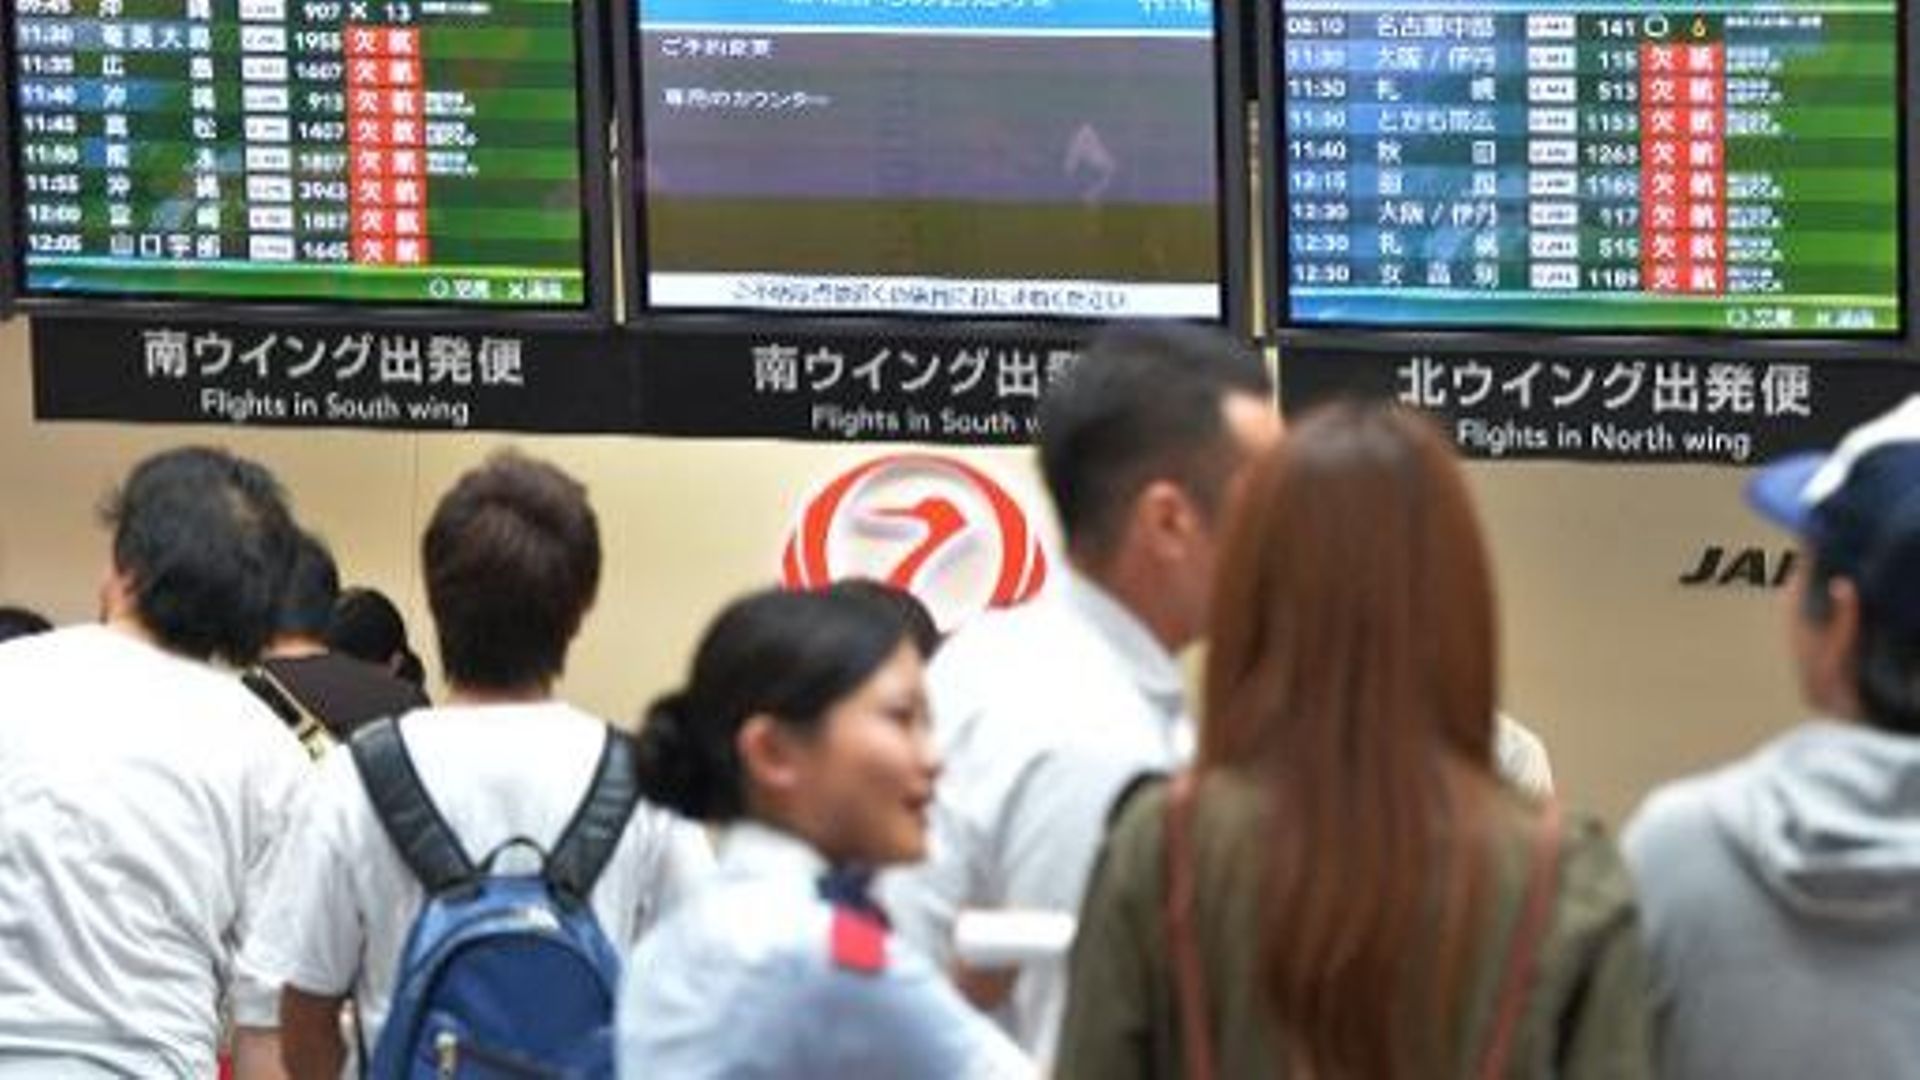 Des voyageurs attendent des informations sur l'annulation des vols en raison d'un typhon, le 16 septembre 2013 à l'aéroport de Tokyo 